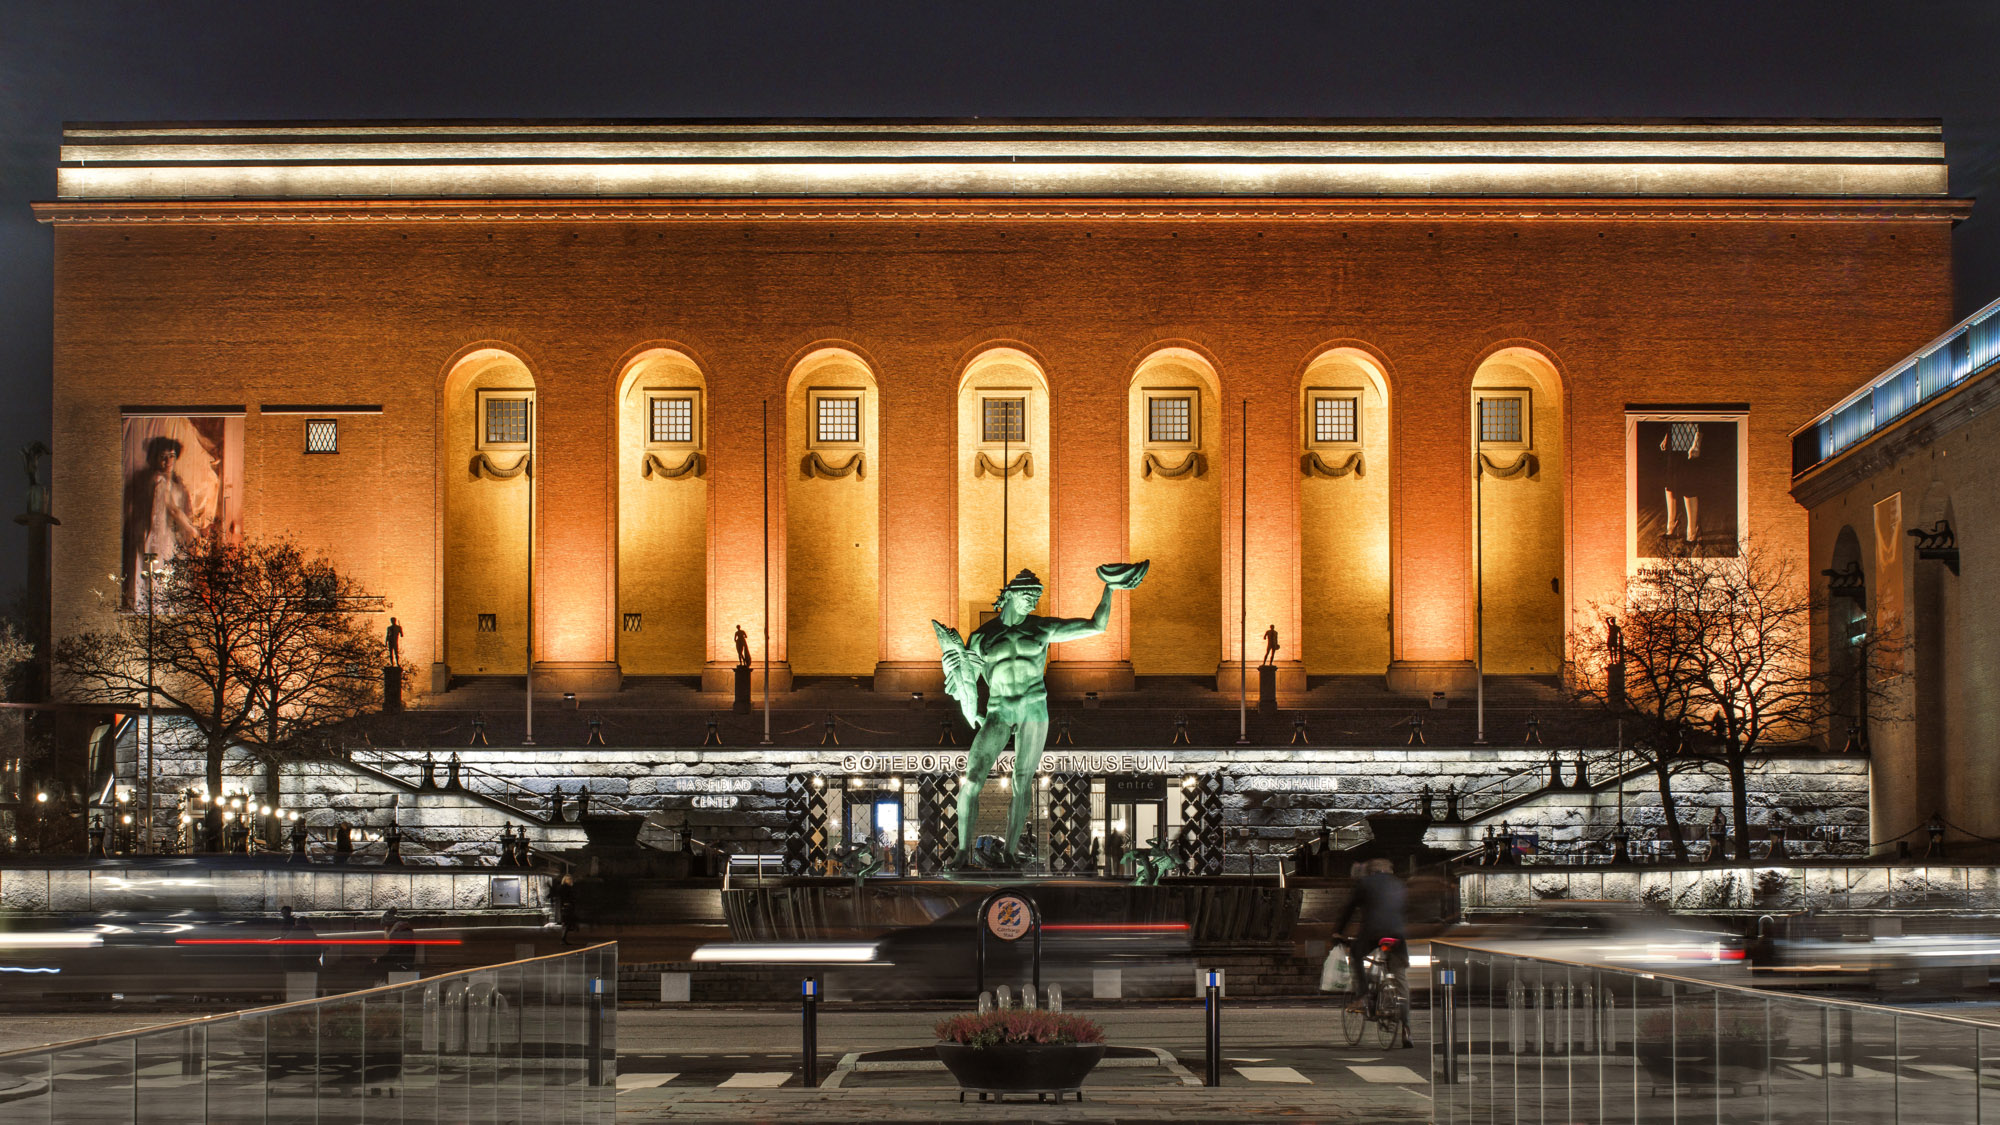 Kvällsbild på upplyst byggnad med valvbågar och staty i förgrunden